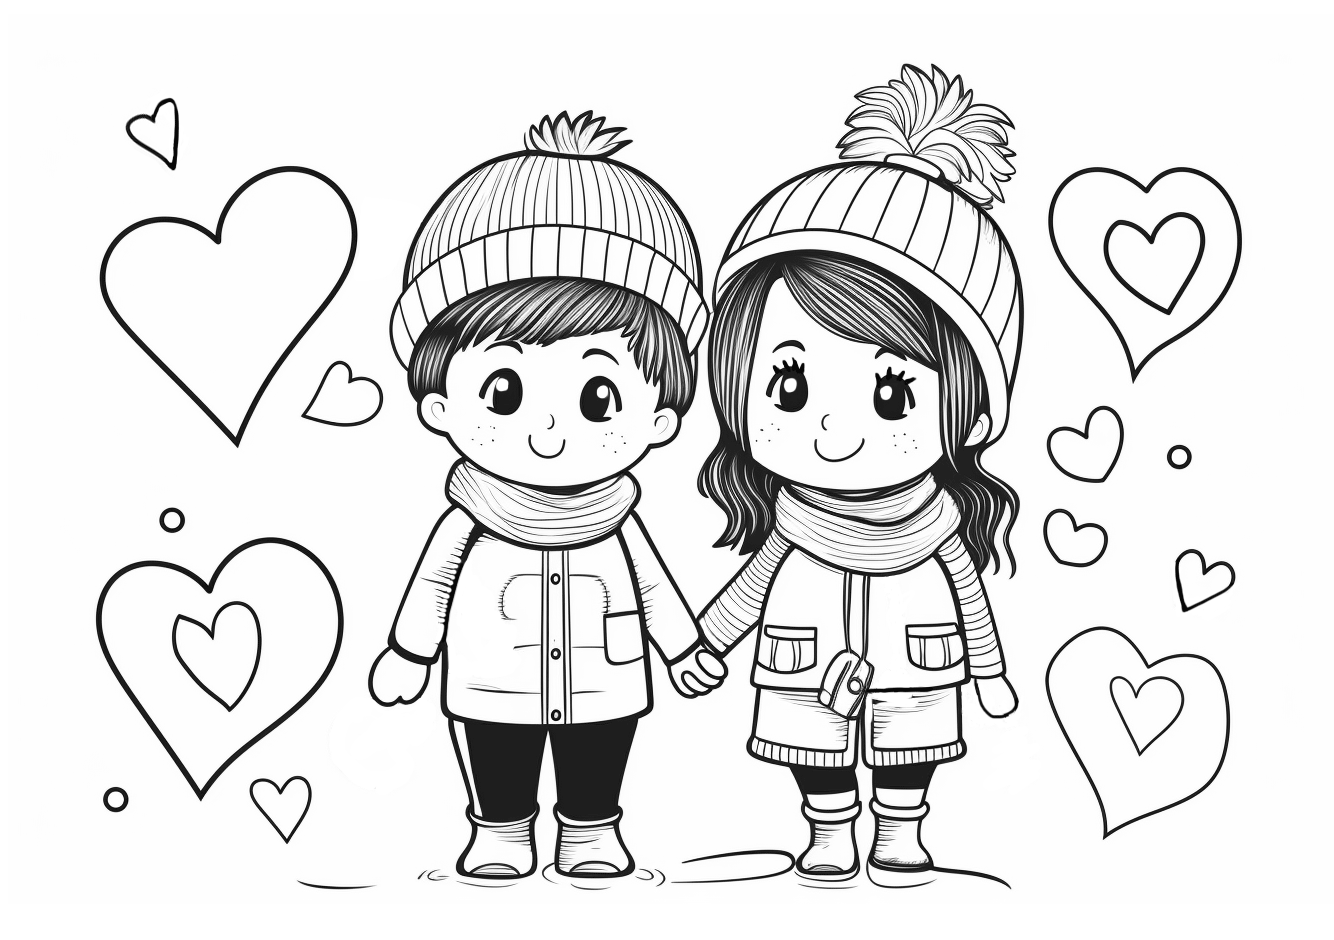 Dibujo para colorear dos niños agarrados de la mano con corazones